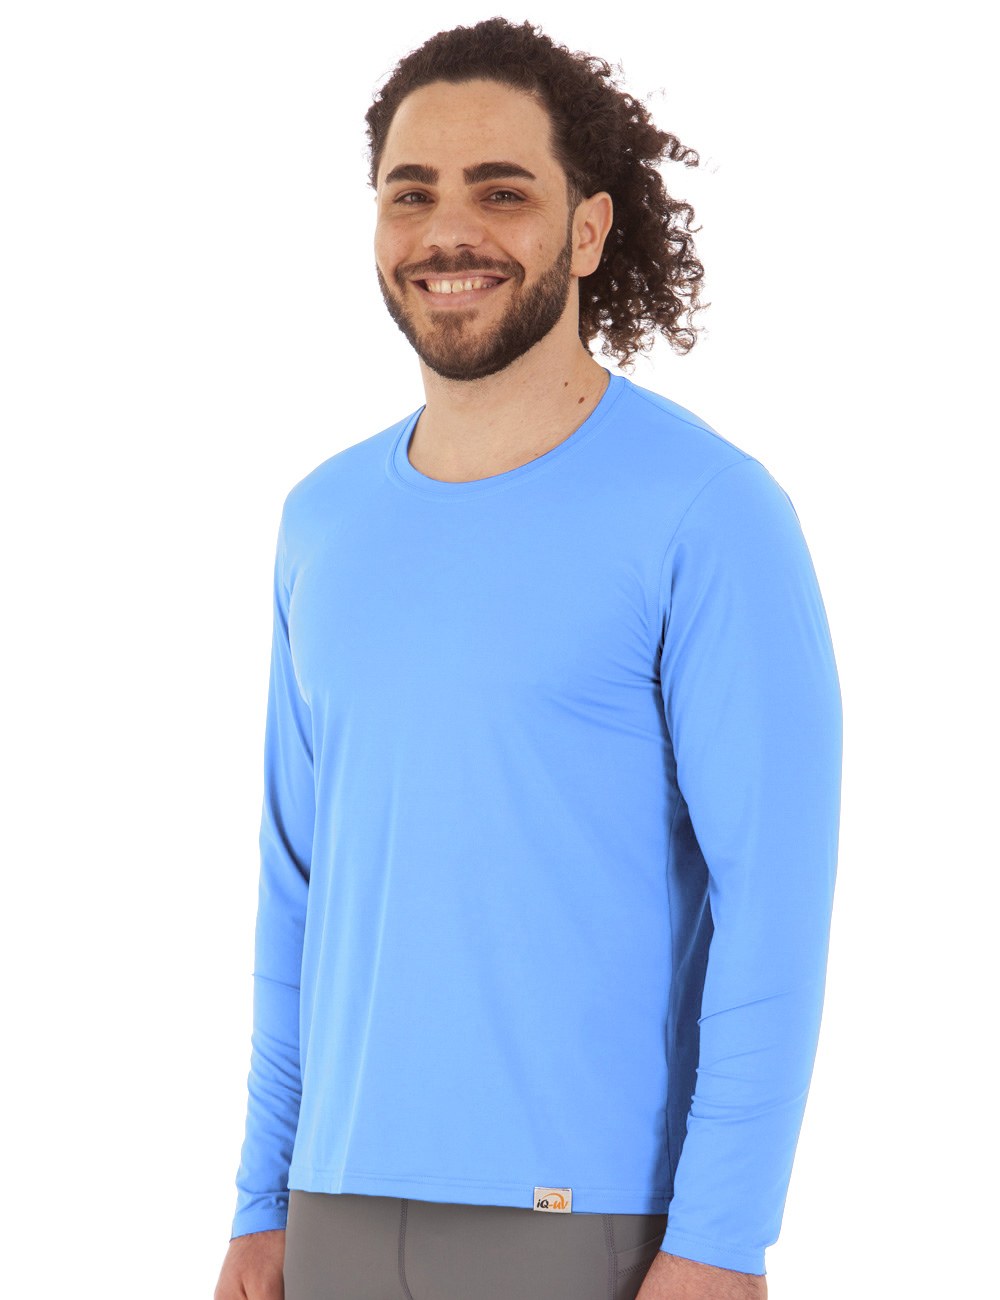 FREE LongShirt | Individualist hellblau seitlich